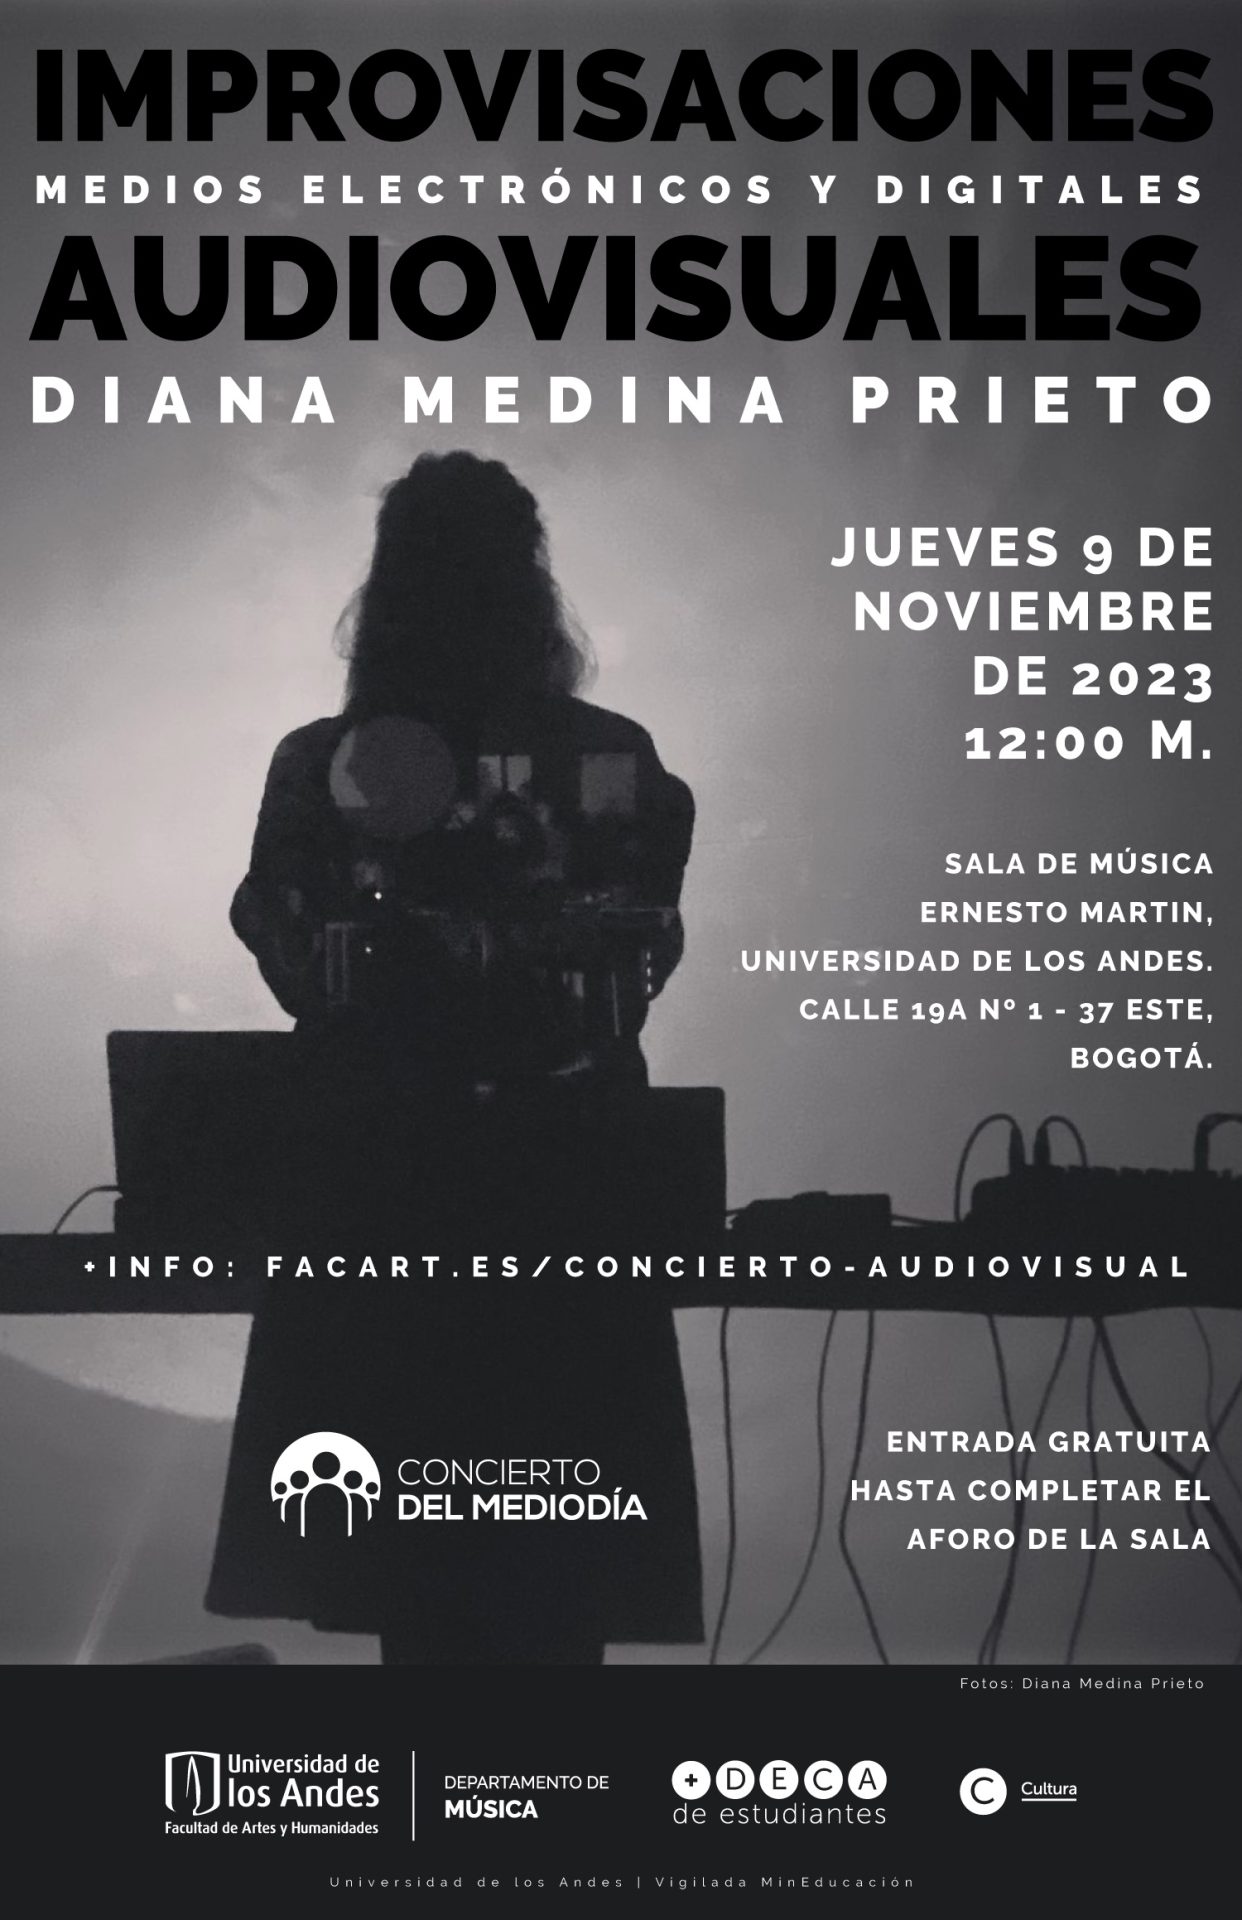 Jueves de 9 de noviembre de 2023 a la 12:00 m. en la sala de música Ernesto Martin, Universidad de los Andes